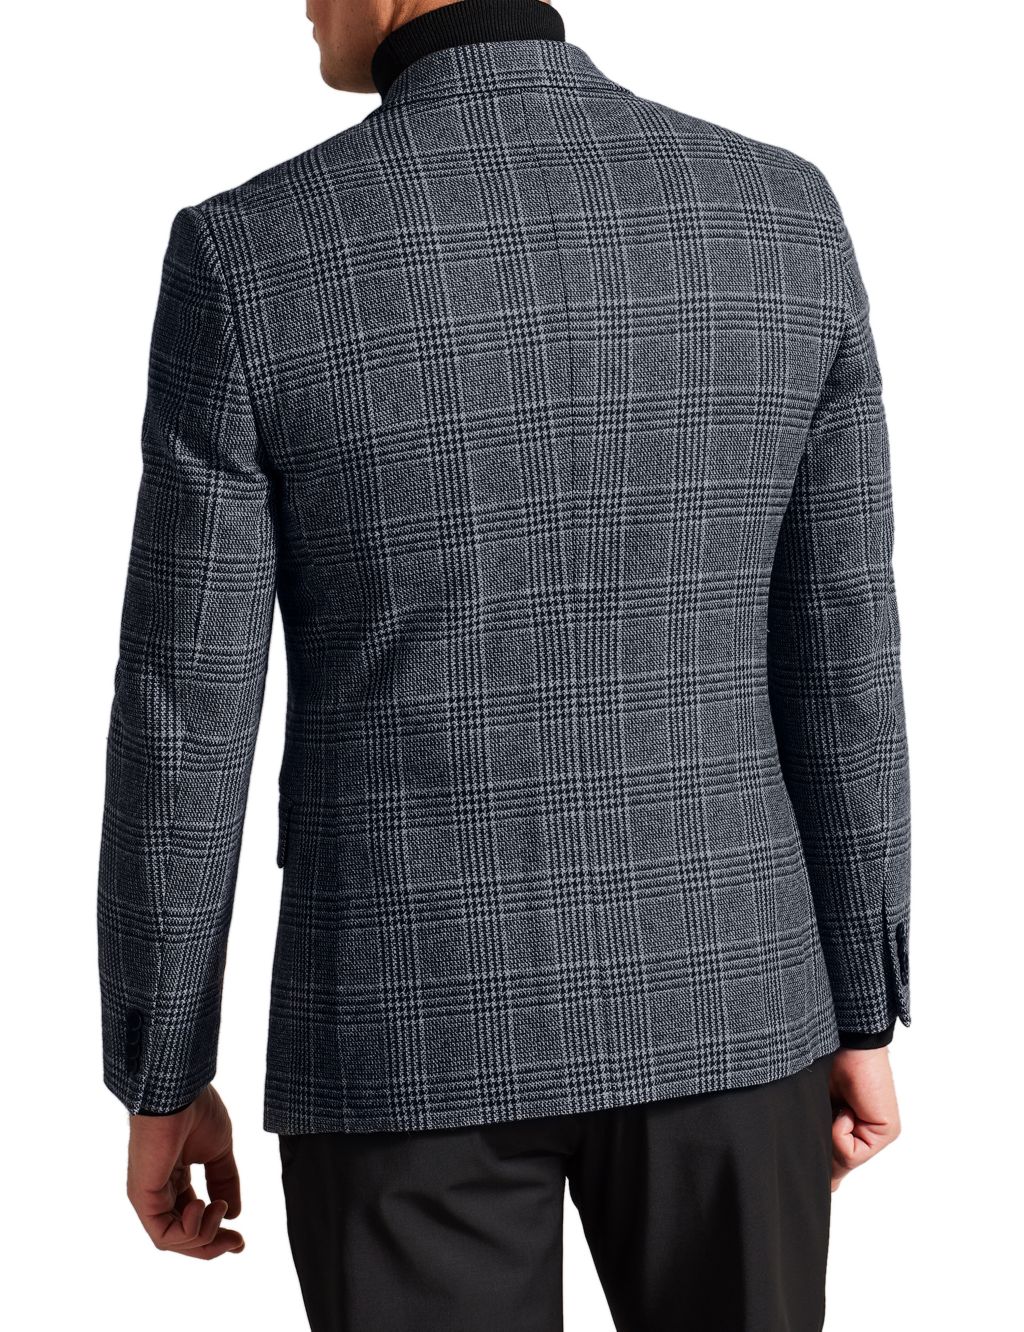 Regular Fit Wool Blend Check Suit Jacket image 4